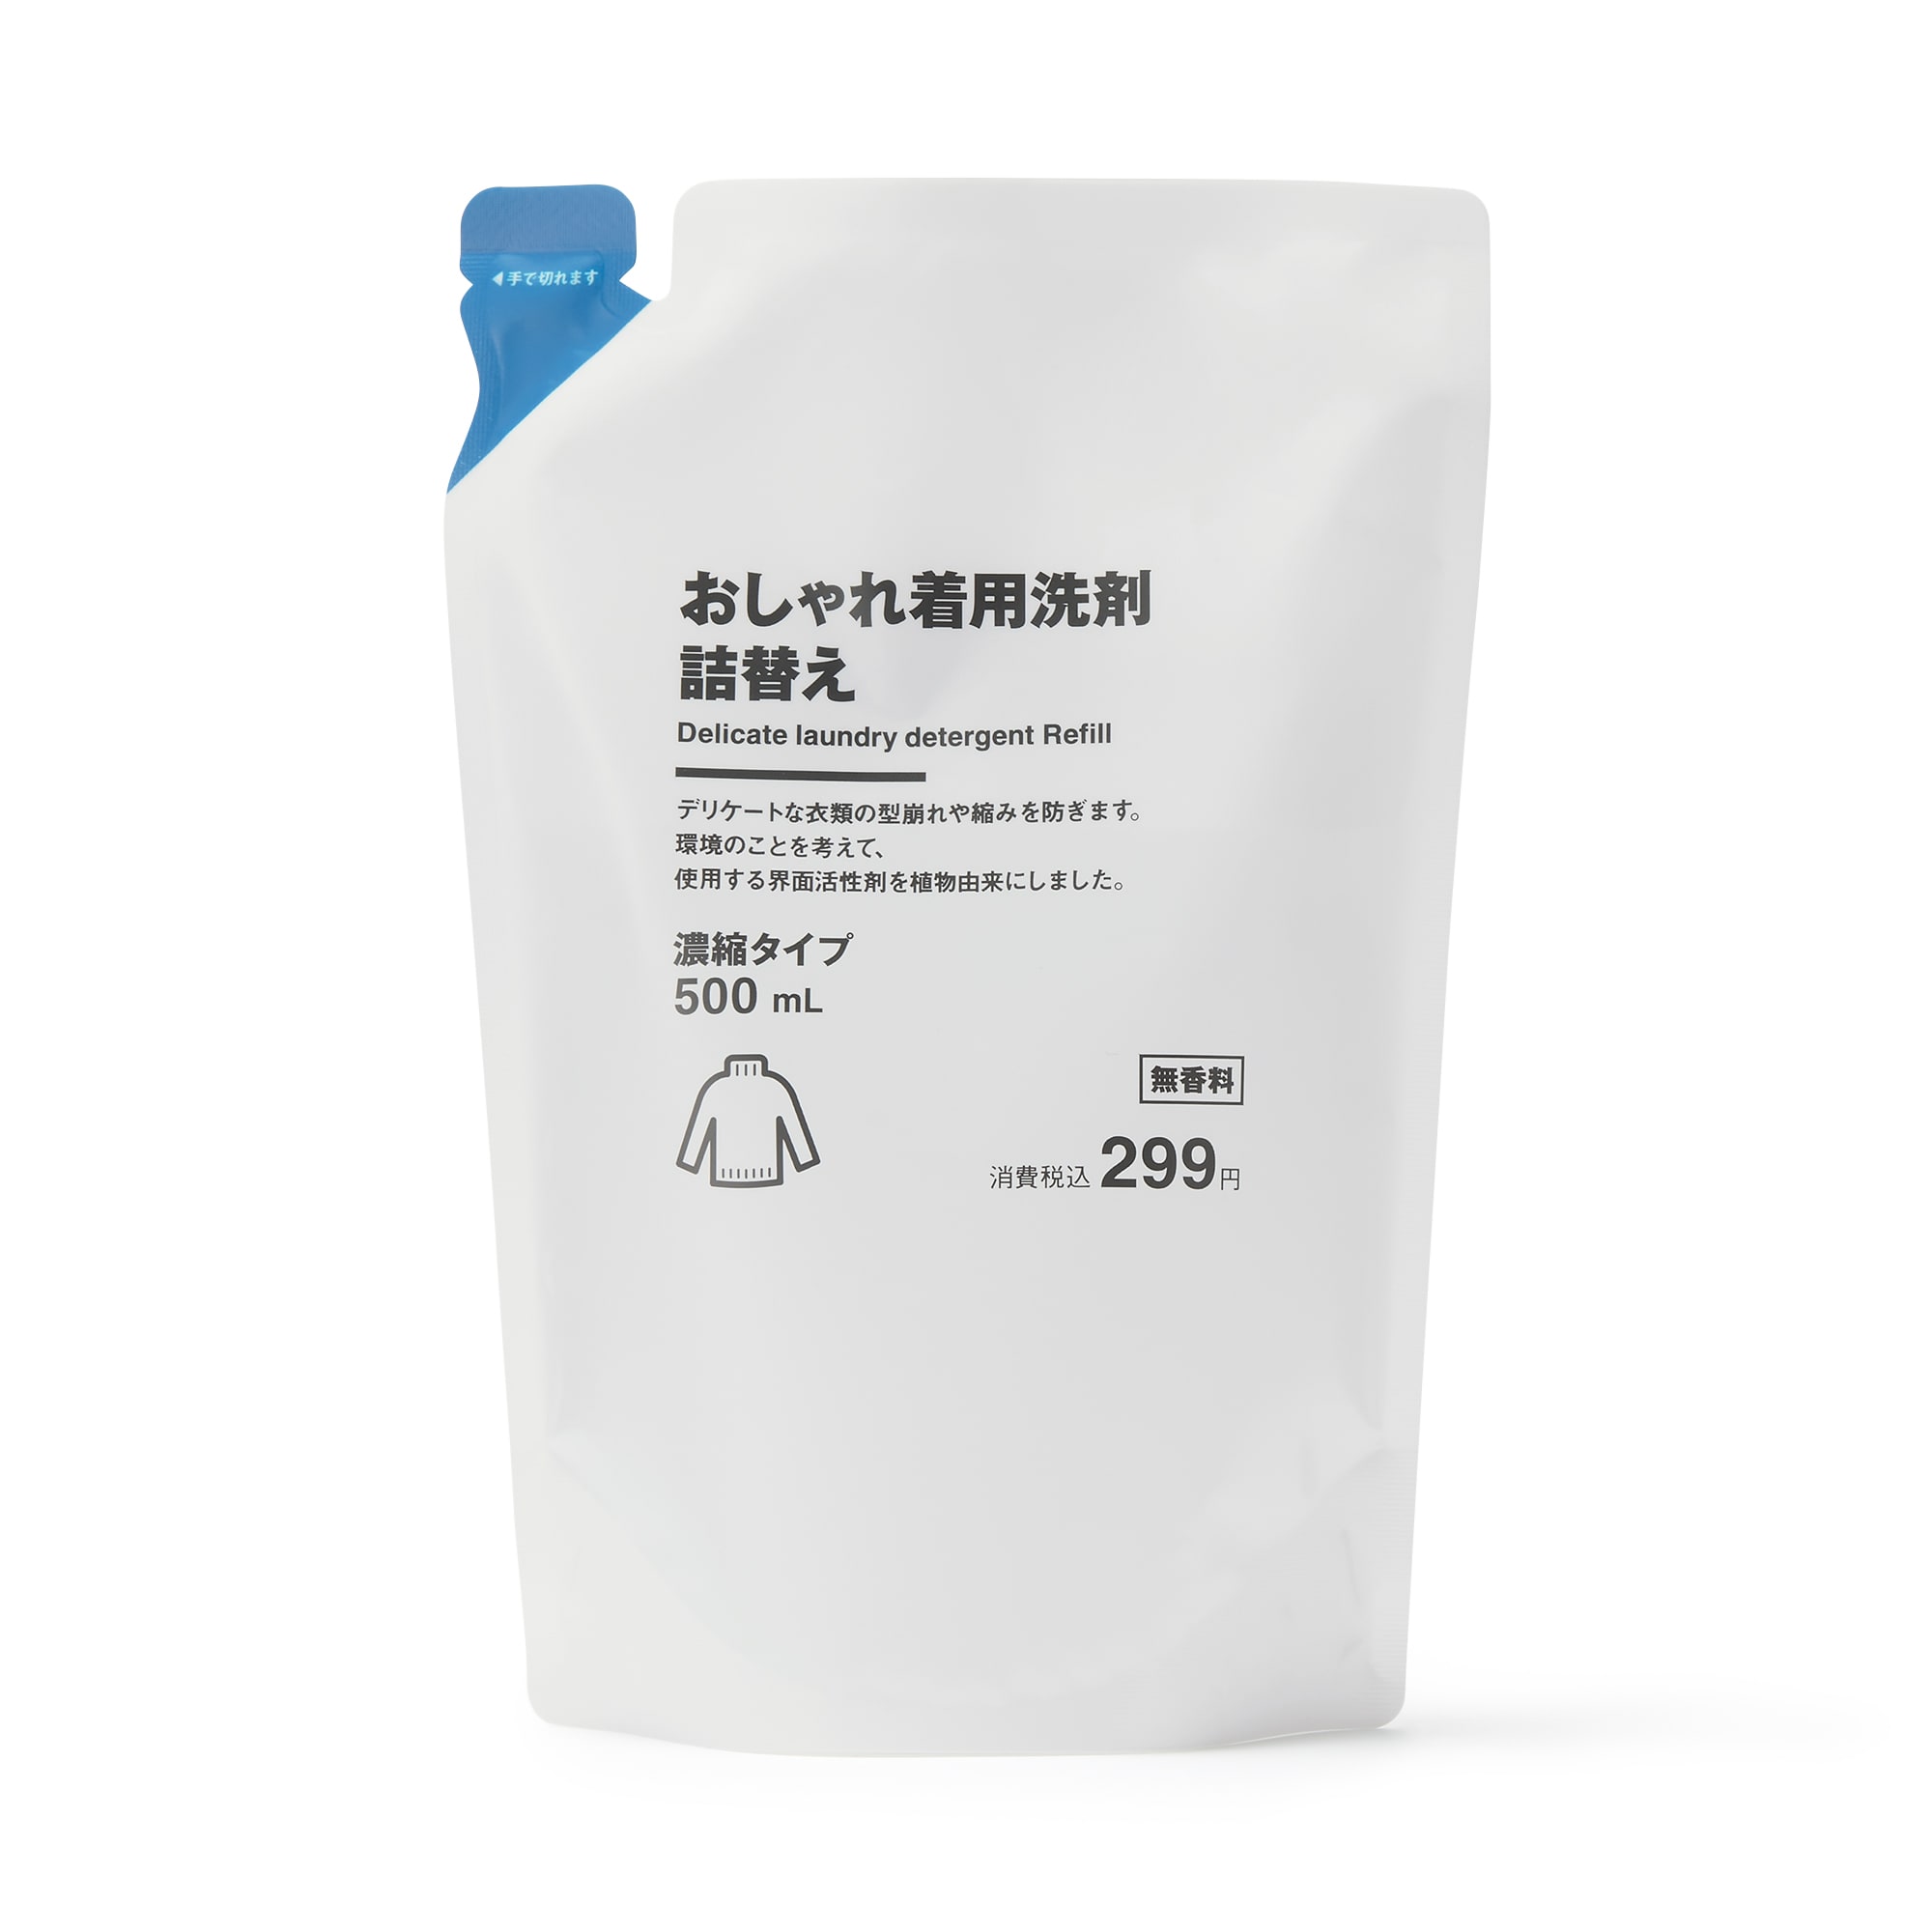 무인양품 일본 세탁 세제 중성 섬세한 의류 리필용 500ml